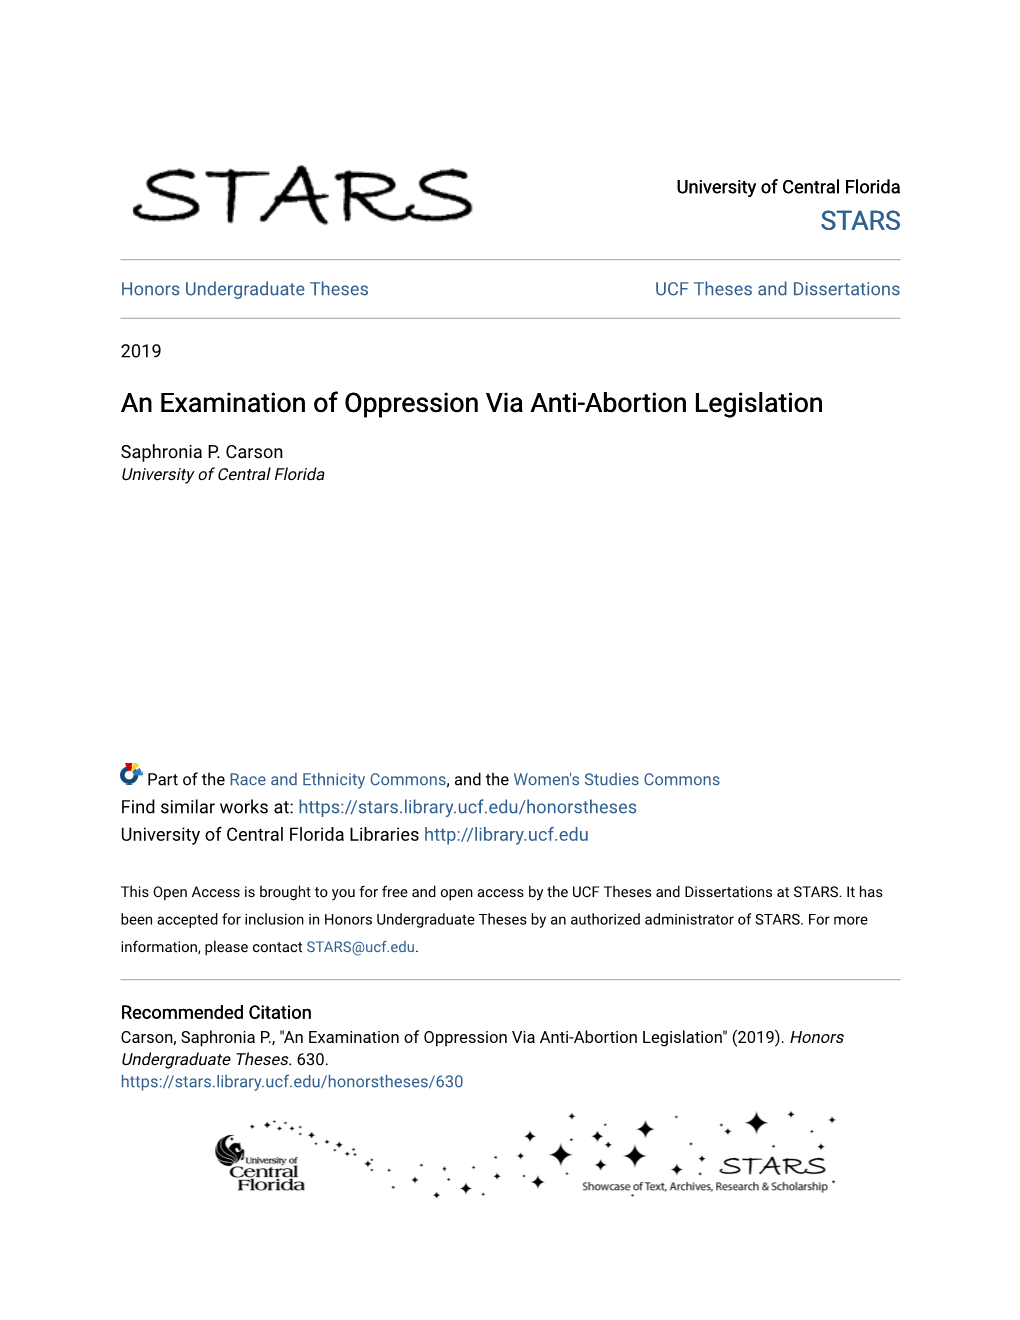 An Examination of Oppression Via Anti-Abortion Legislation